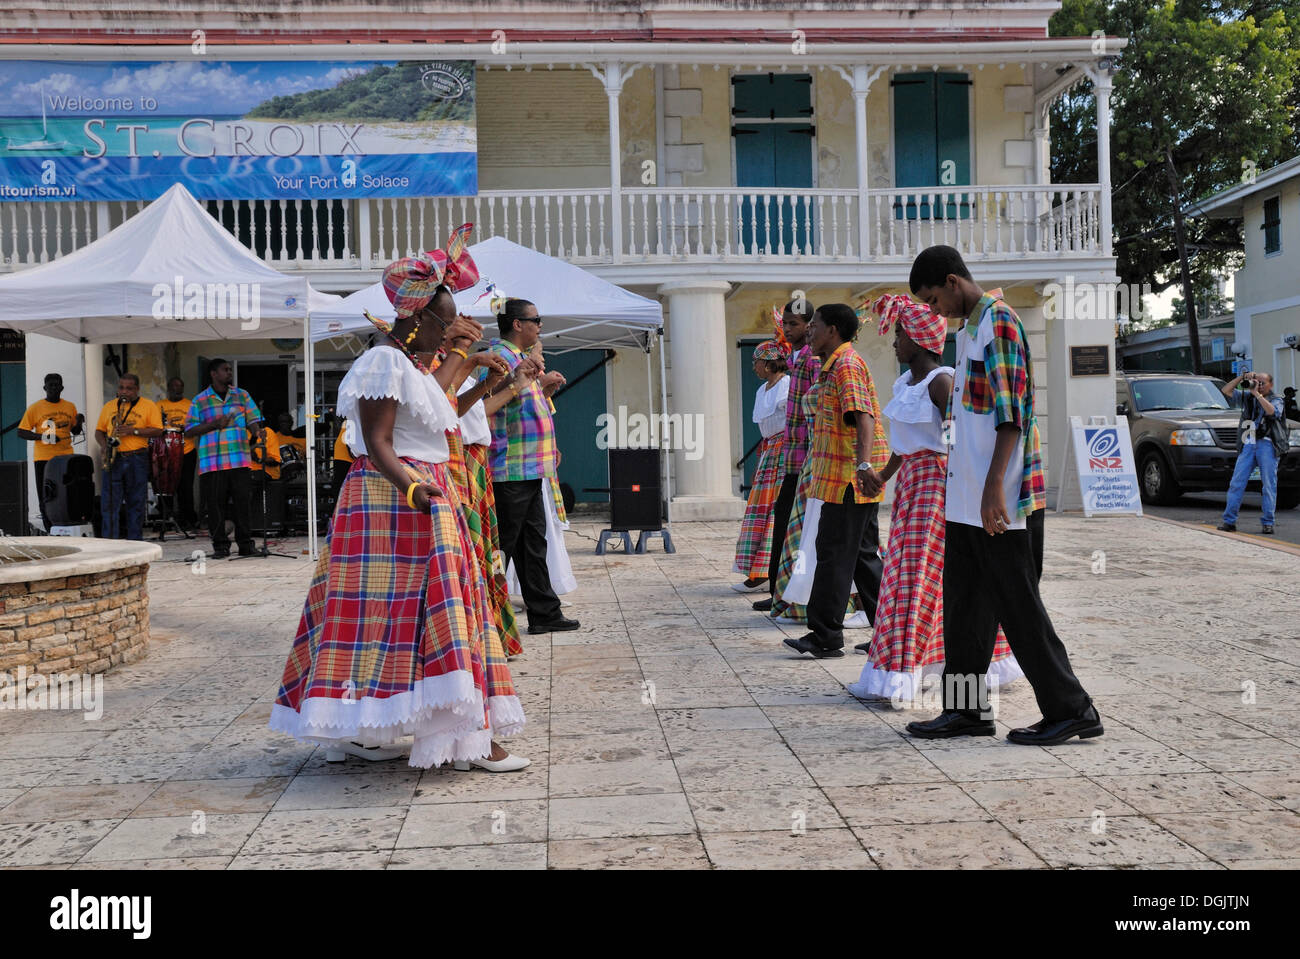 Il gruppo folk ballare una quadriglia, Frederiksted, St. Croix island, Isole Vergini americane, STATI UNITI D'AMERICA Foto Stock